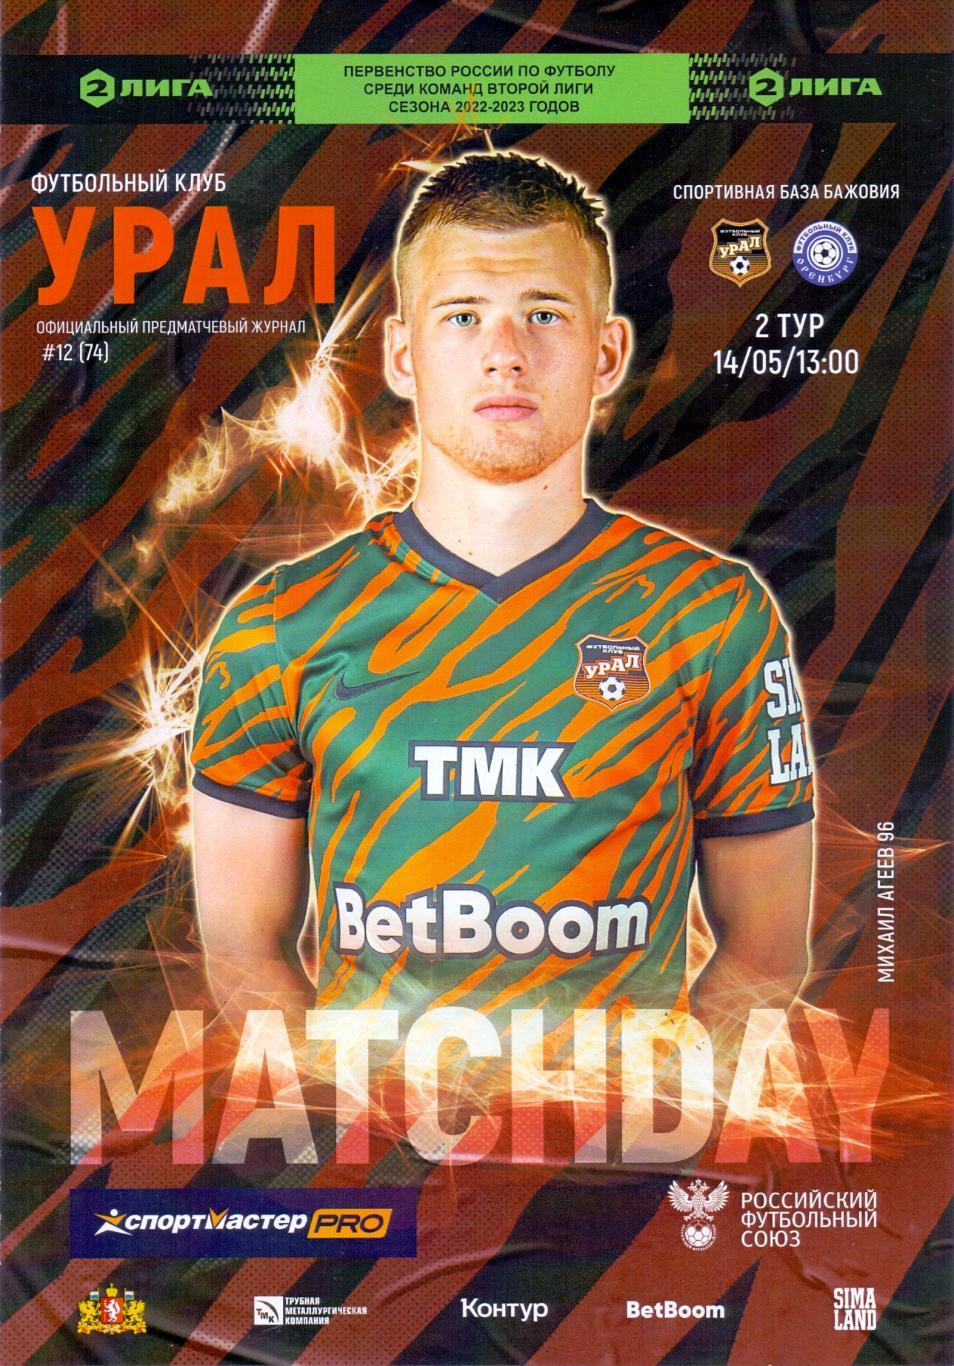 Вторая лига, ФК Урал-2 Екатеринбург - ФК Оренбург-214.05.23